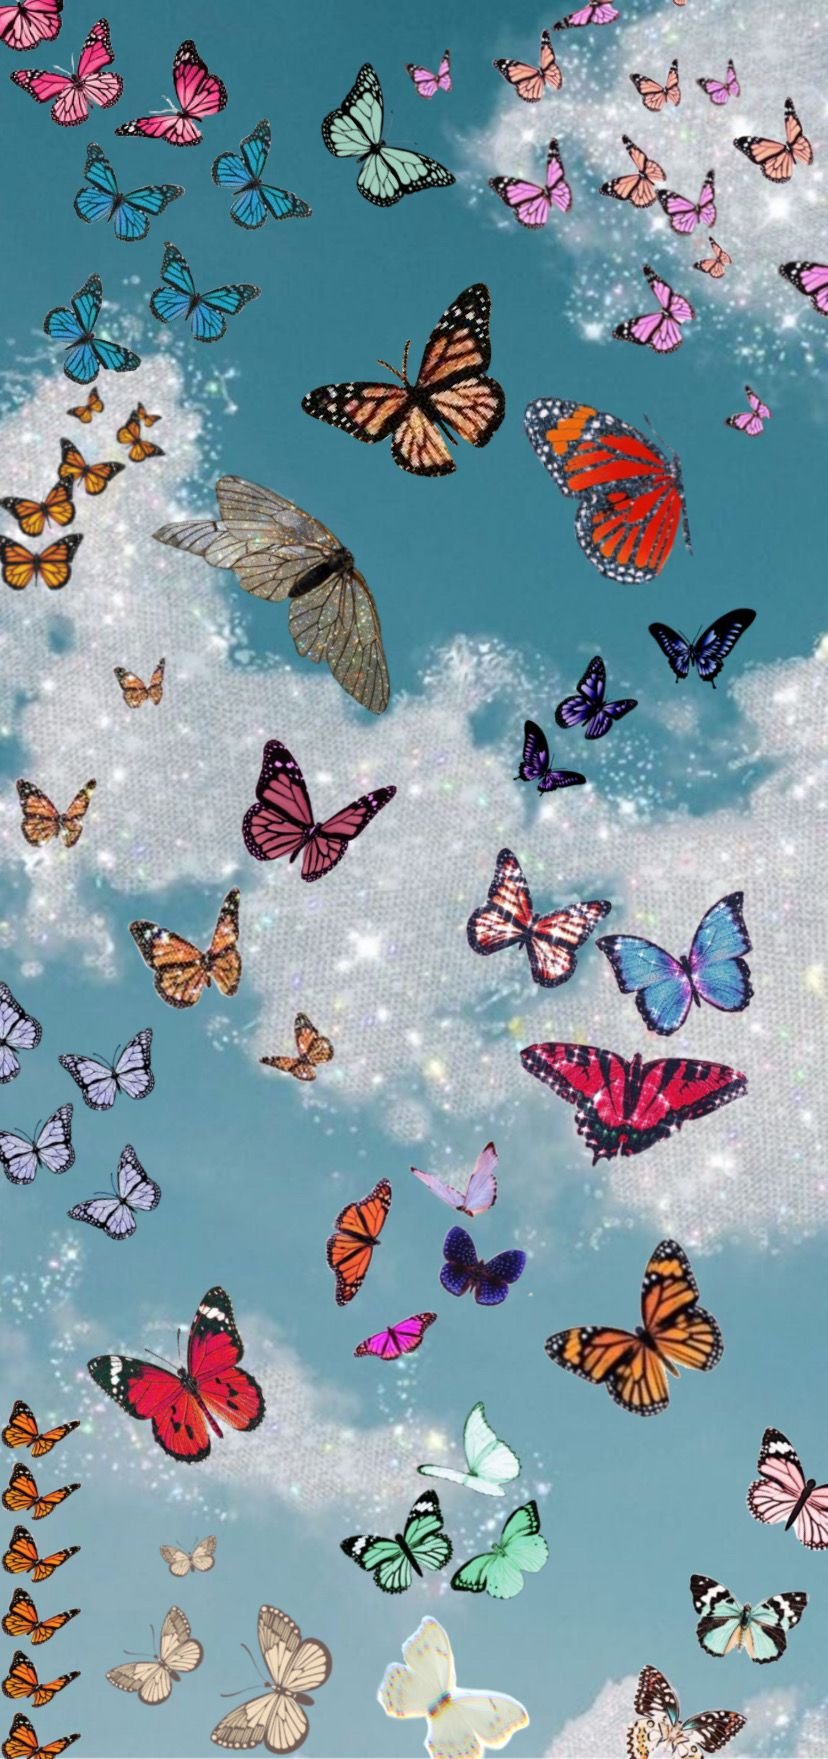 HD aesthetic butterfly wallpapers  Peakpx